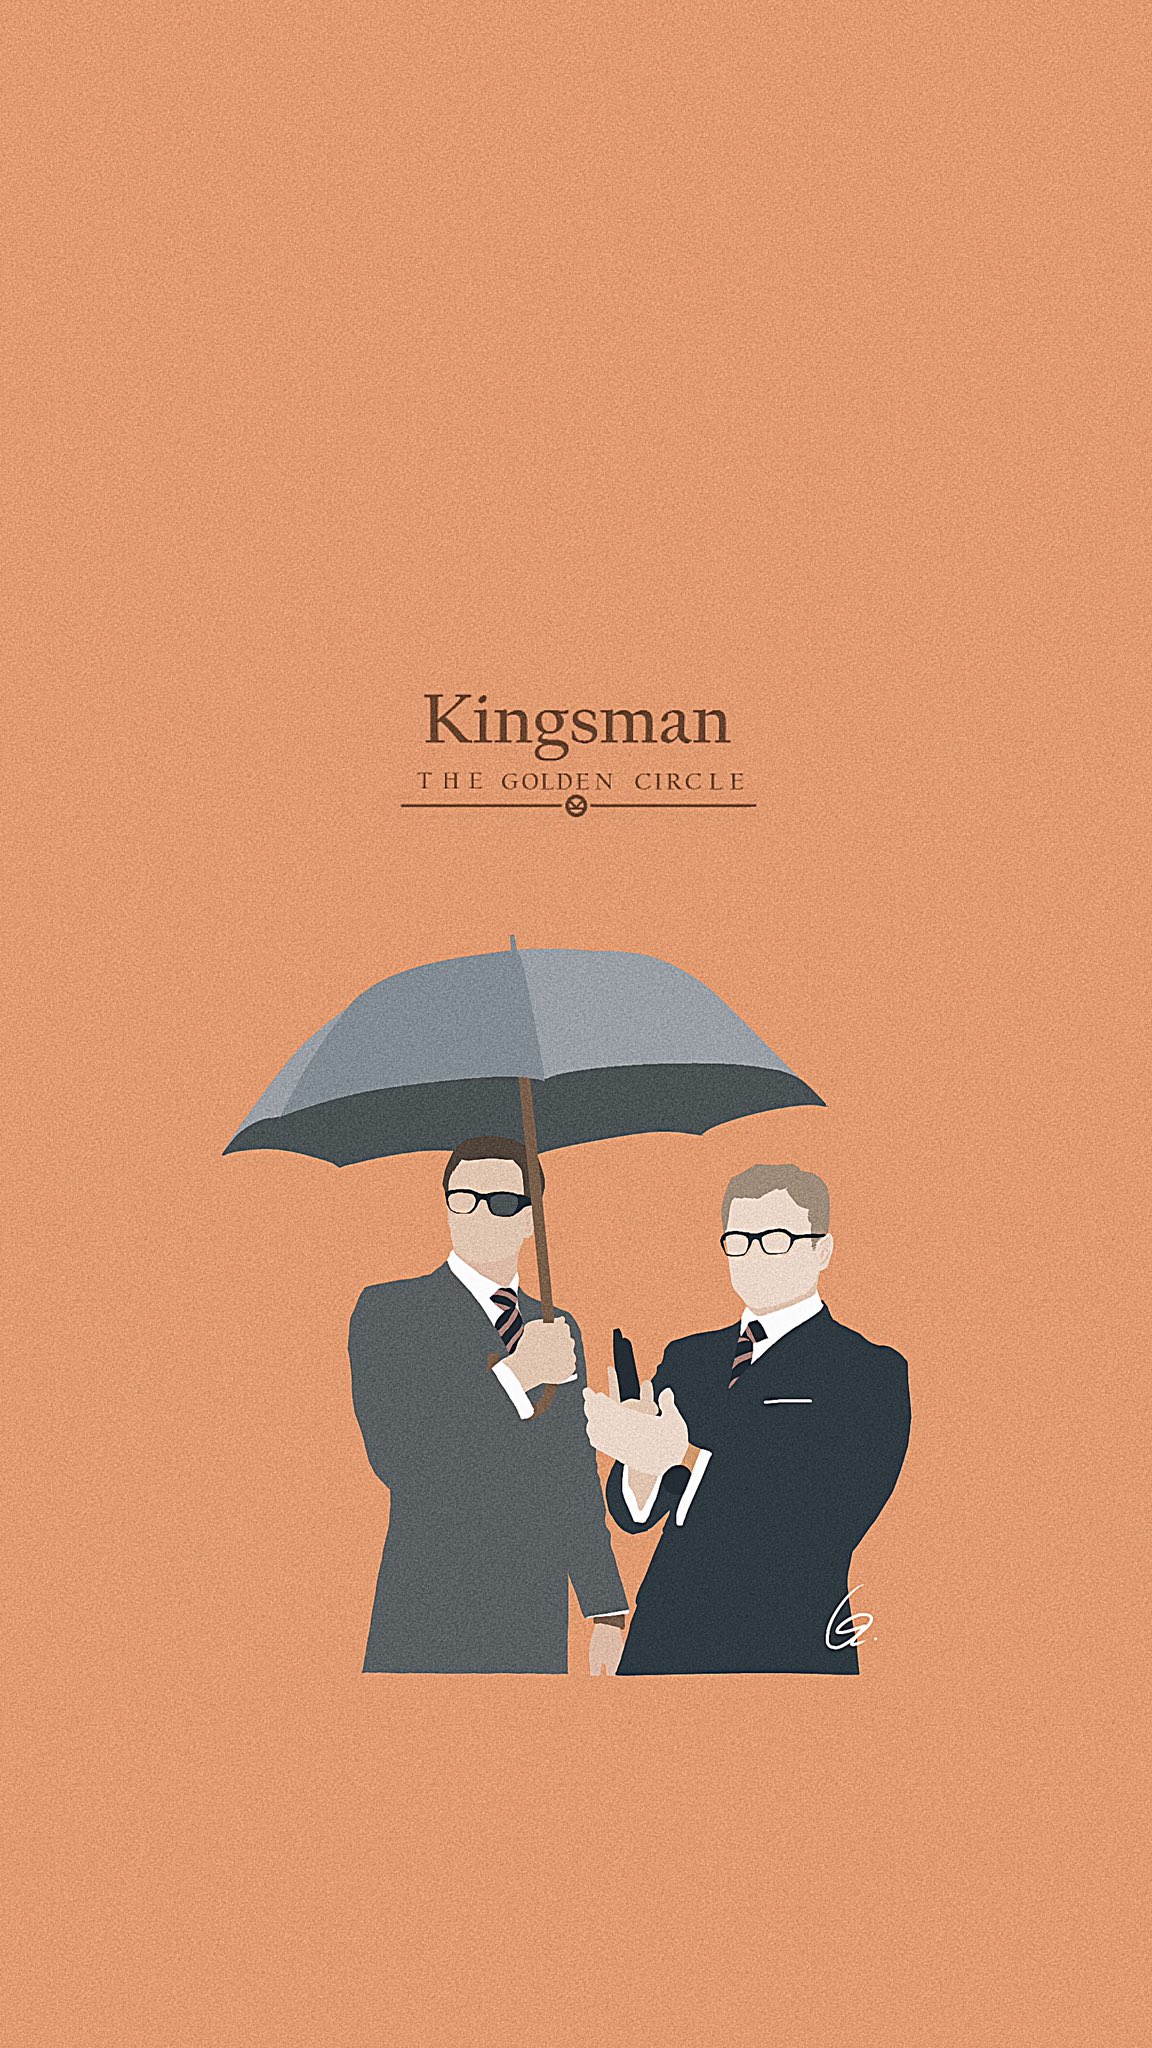 𝐨 𝐳 キングスマンの壁紙を作りました ご自由にお使いください Kingsman キングスマン Ozwallpapers T Co Vfiqny0y4n Twitter